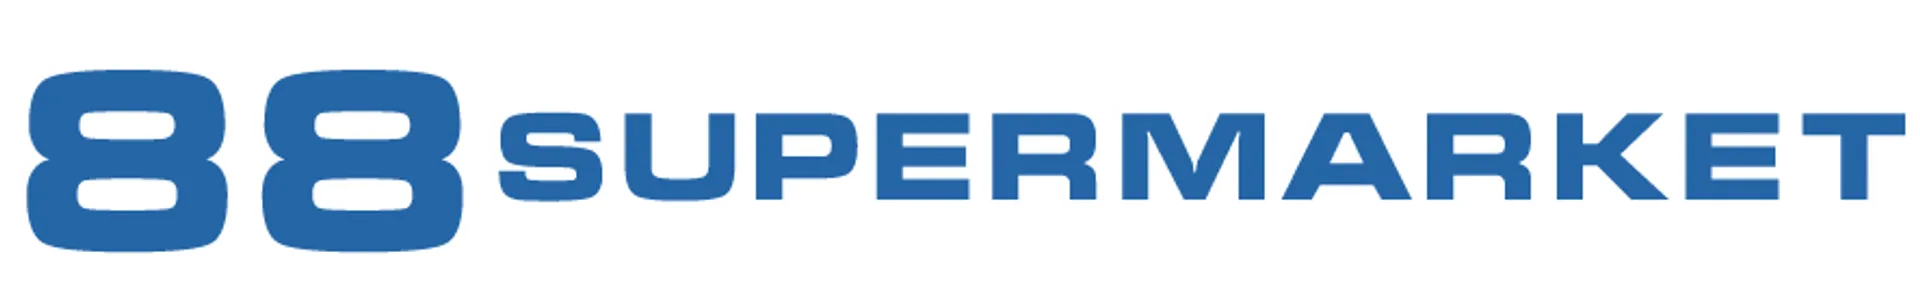 88 SUPERMARKET logo of current flyer